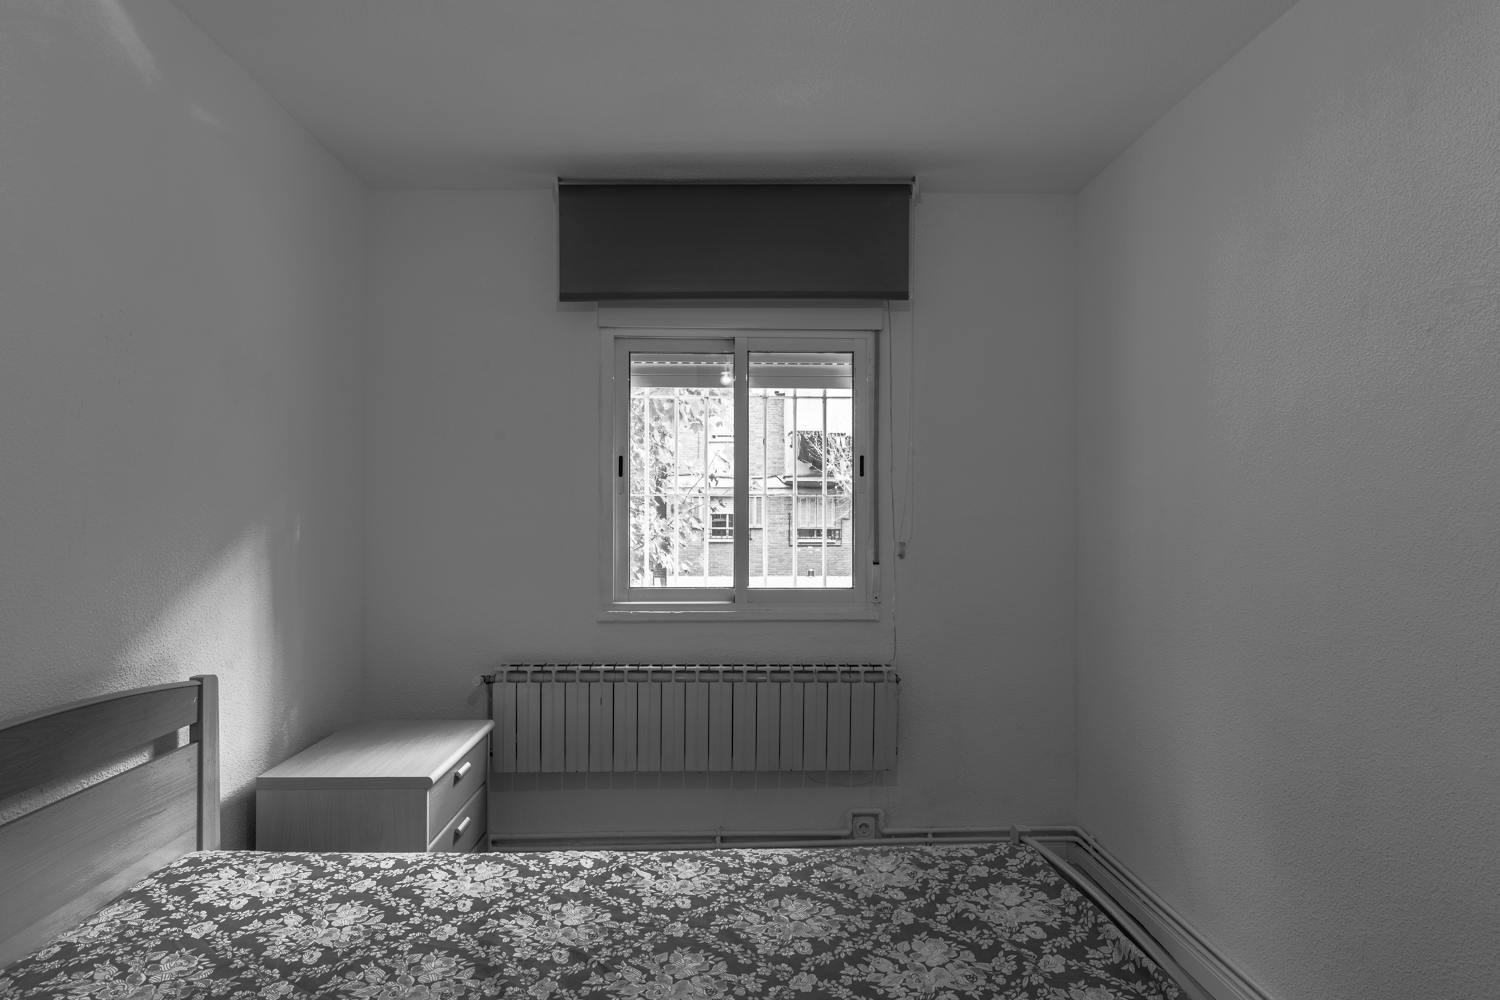 Foto de habitación en un piso en alquiler